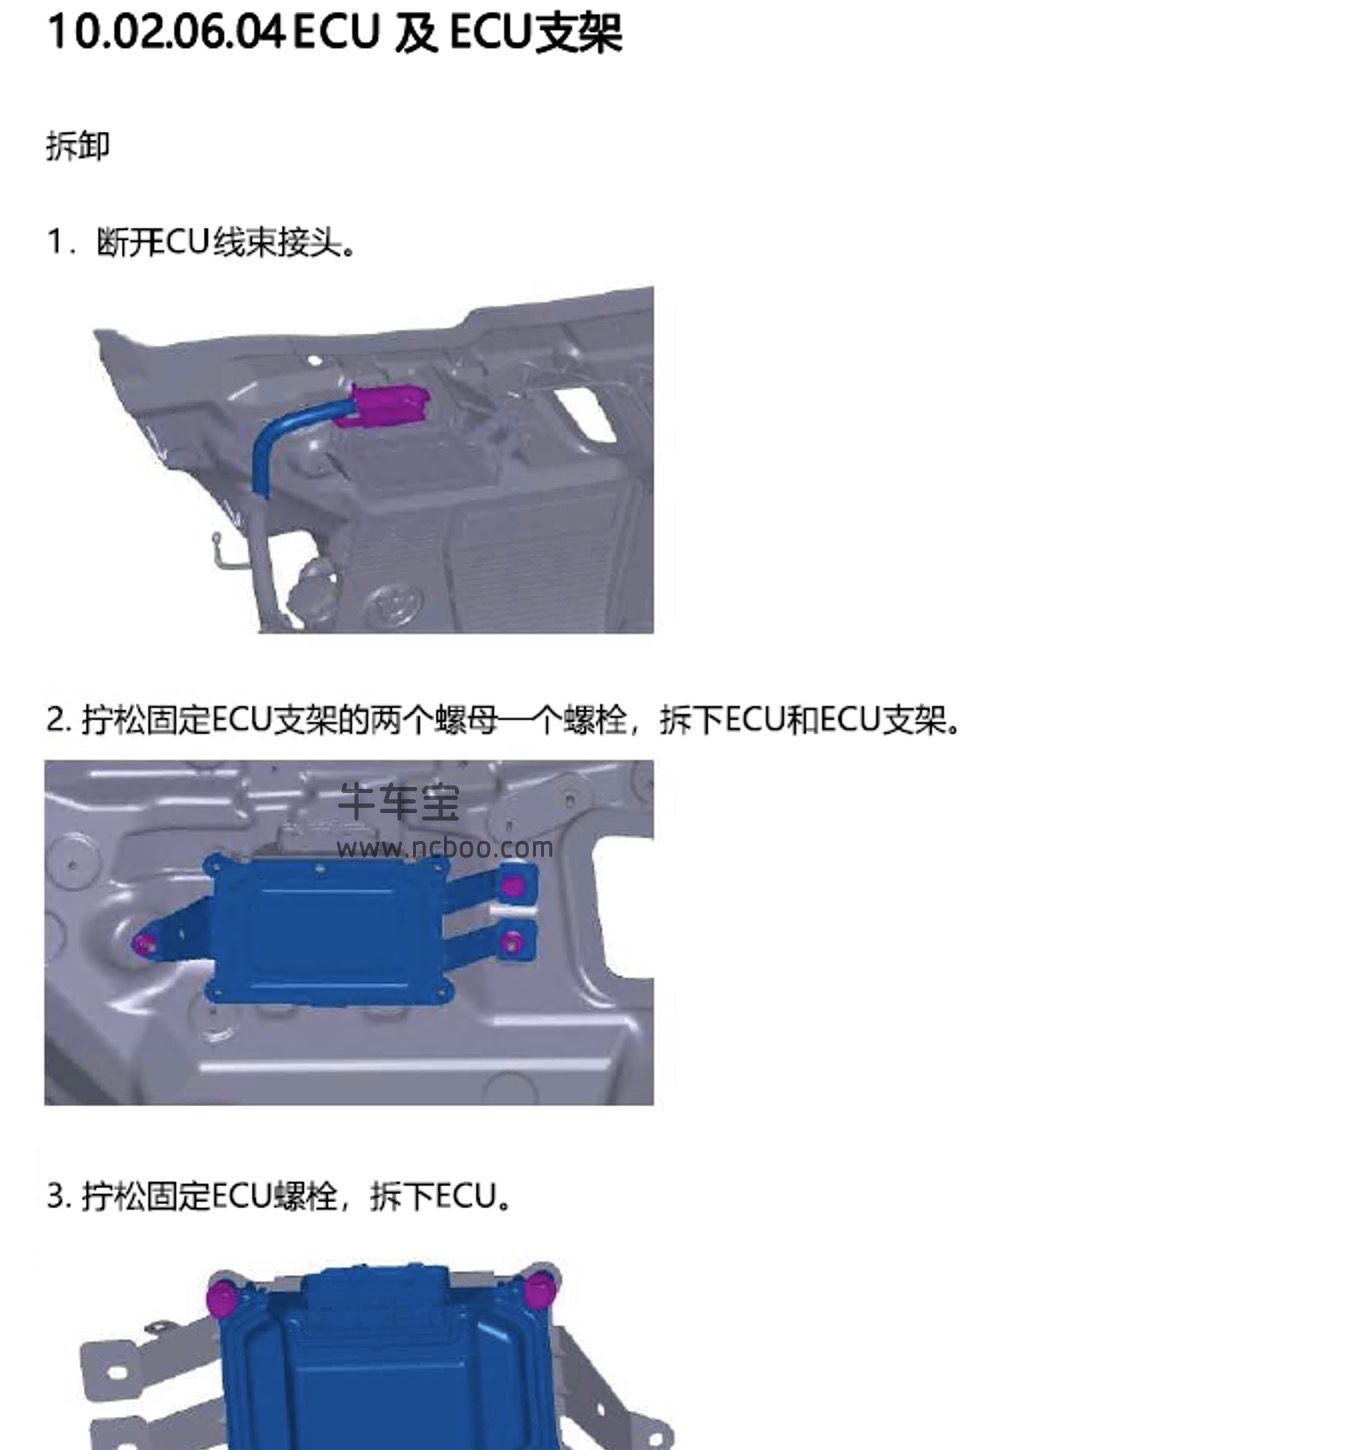 2017-2019款中华H3原厂维修手册和电路图及故障码下载